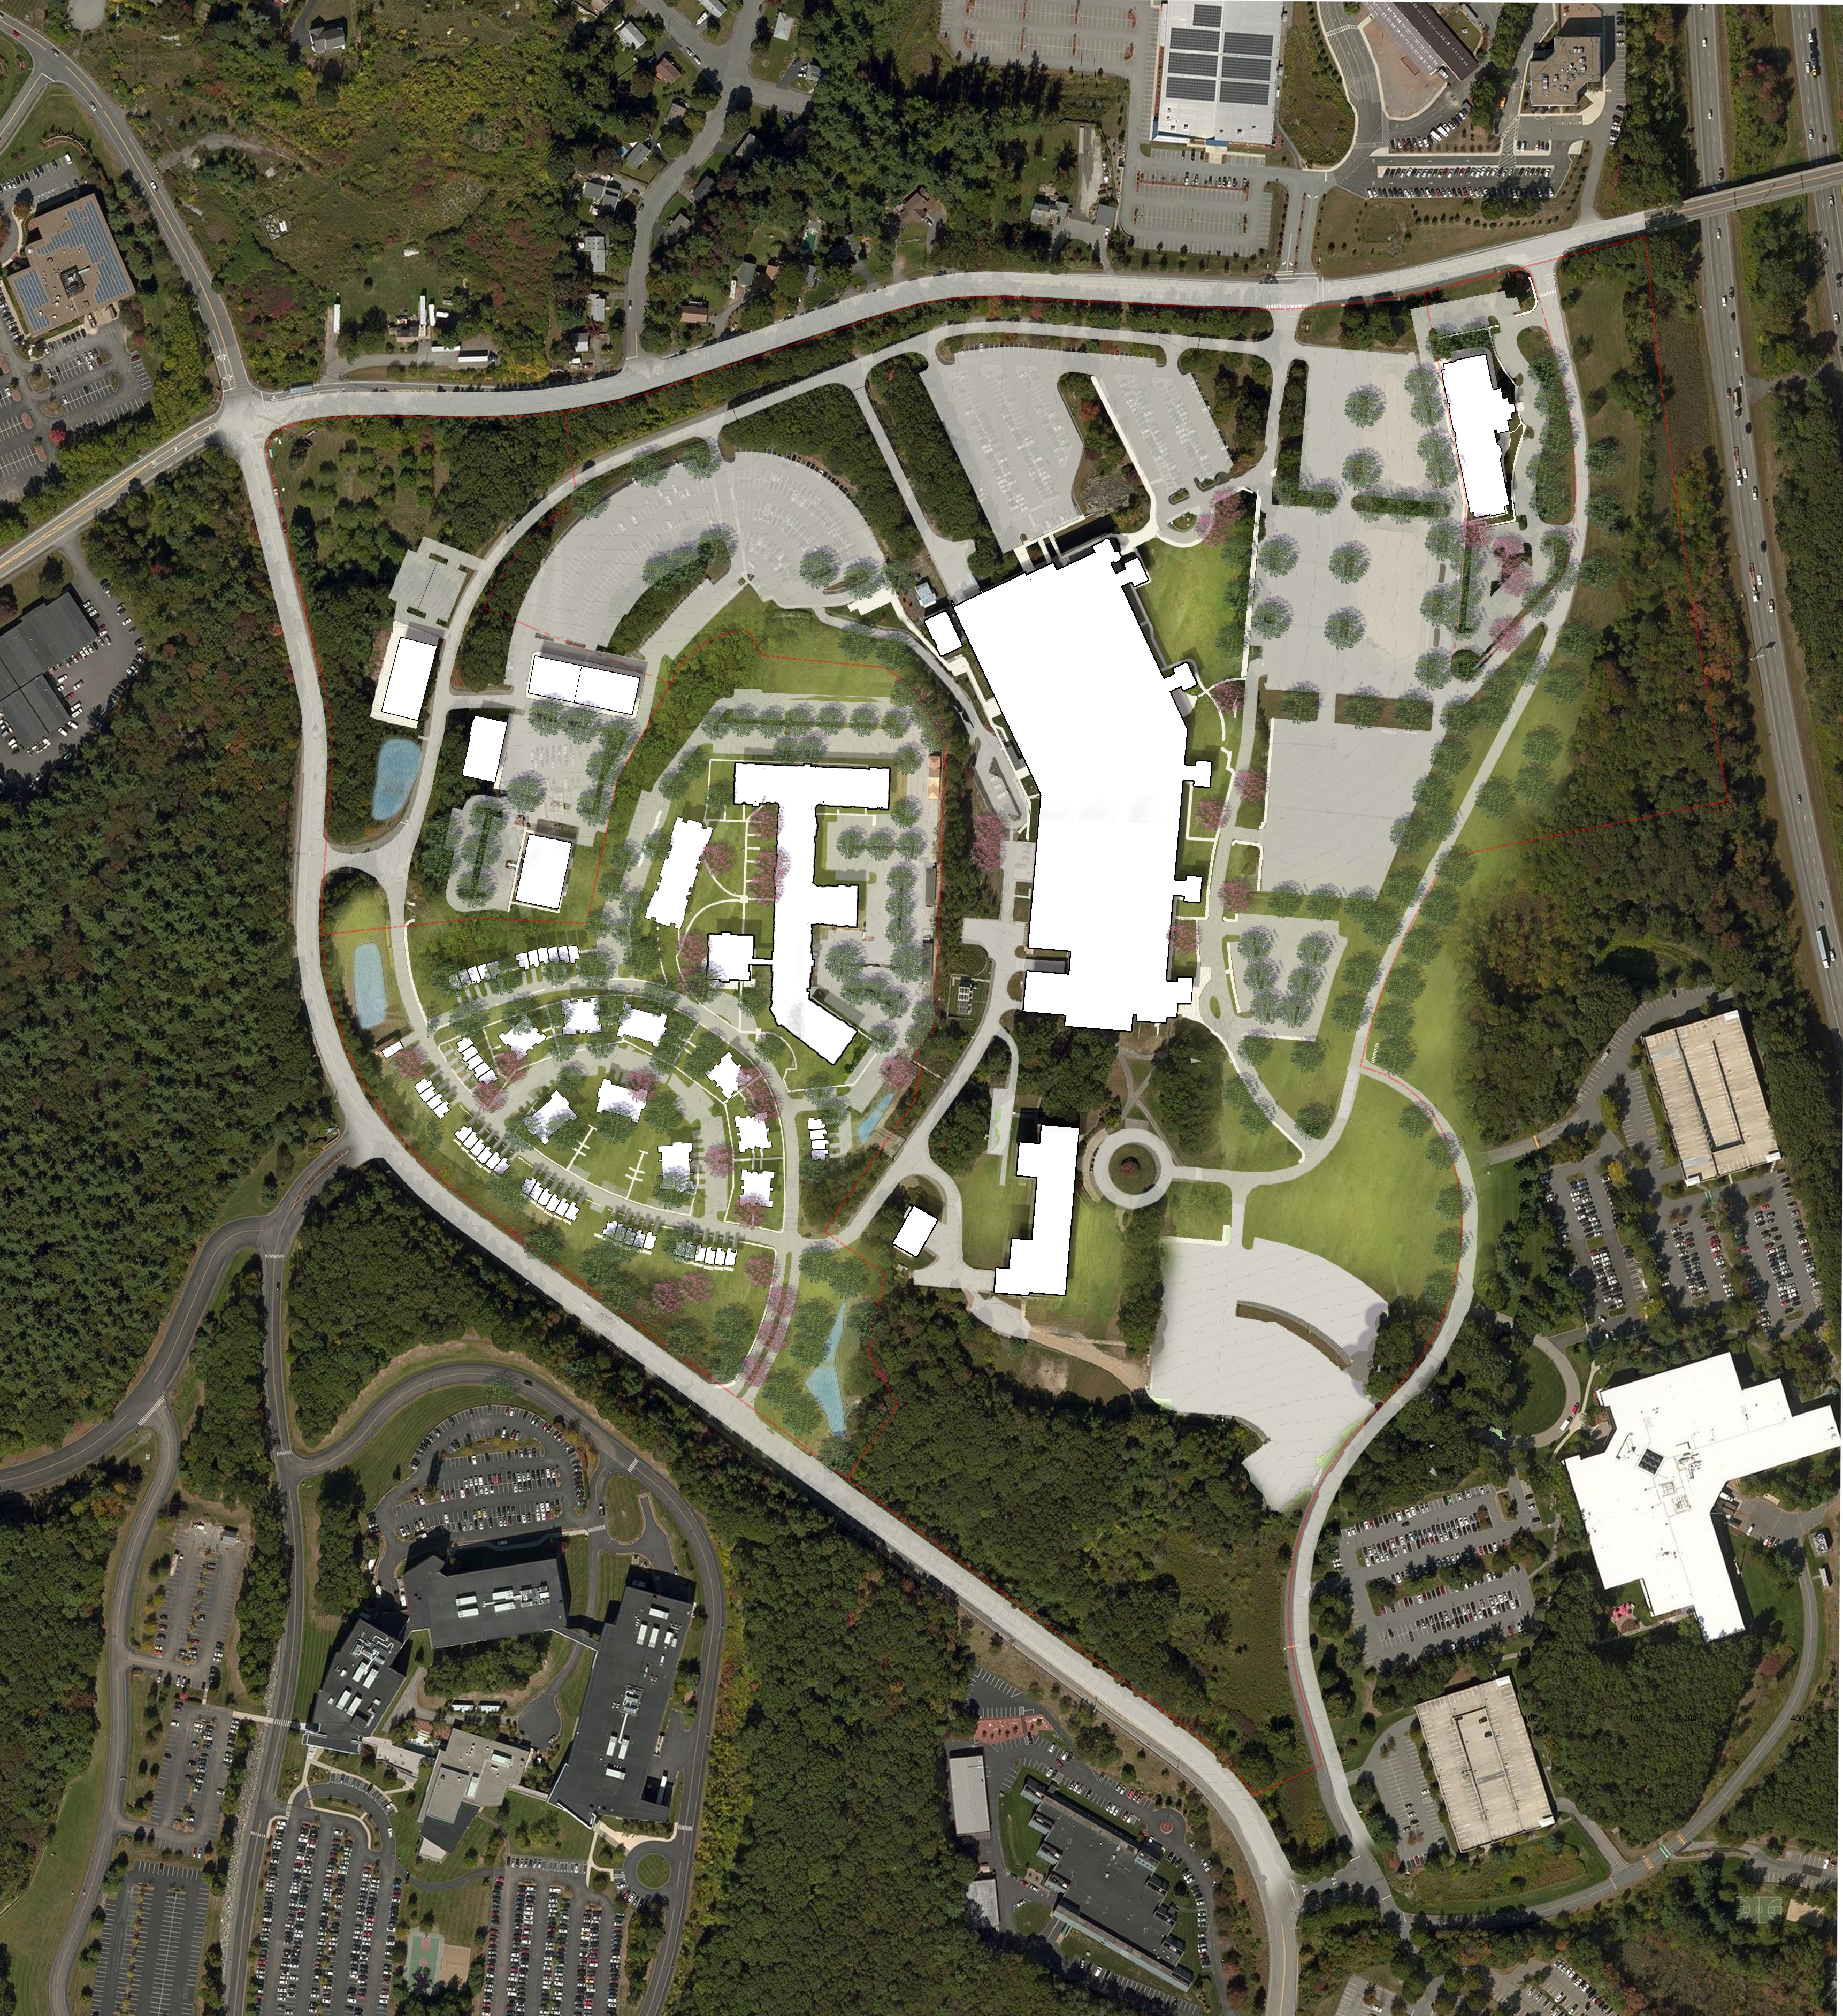 Marlborough Hills Aerial View | SMMA master plan site design